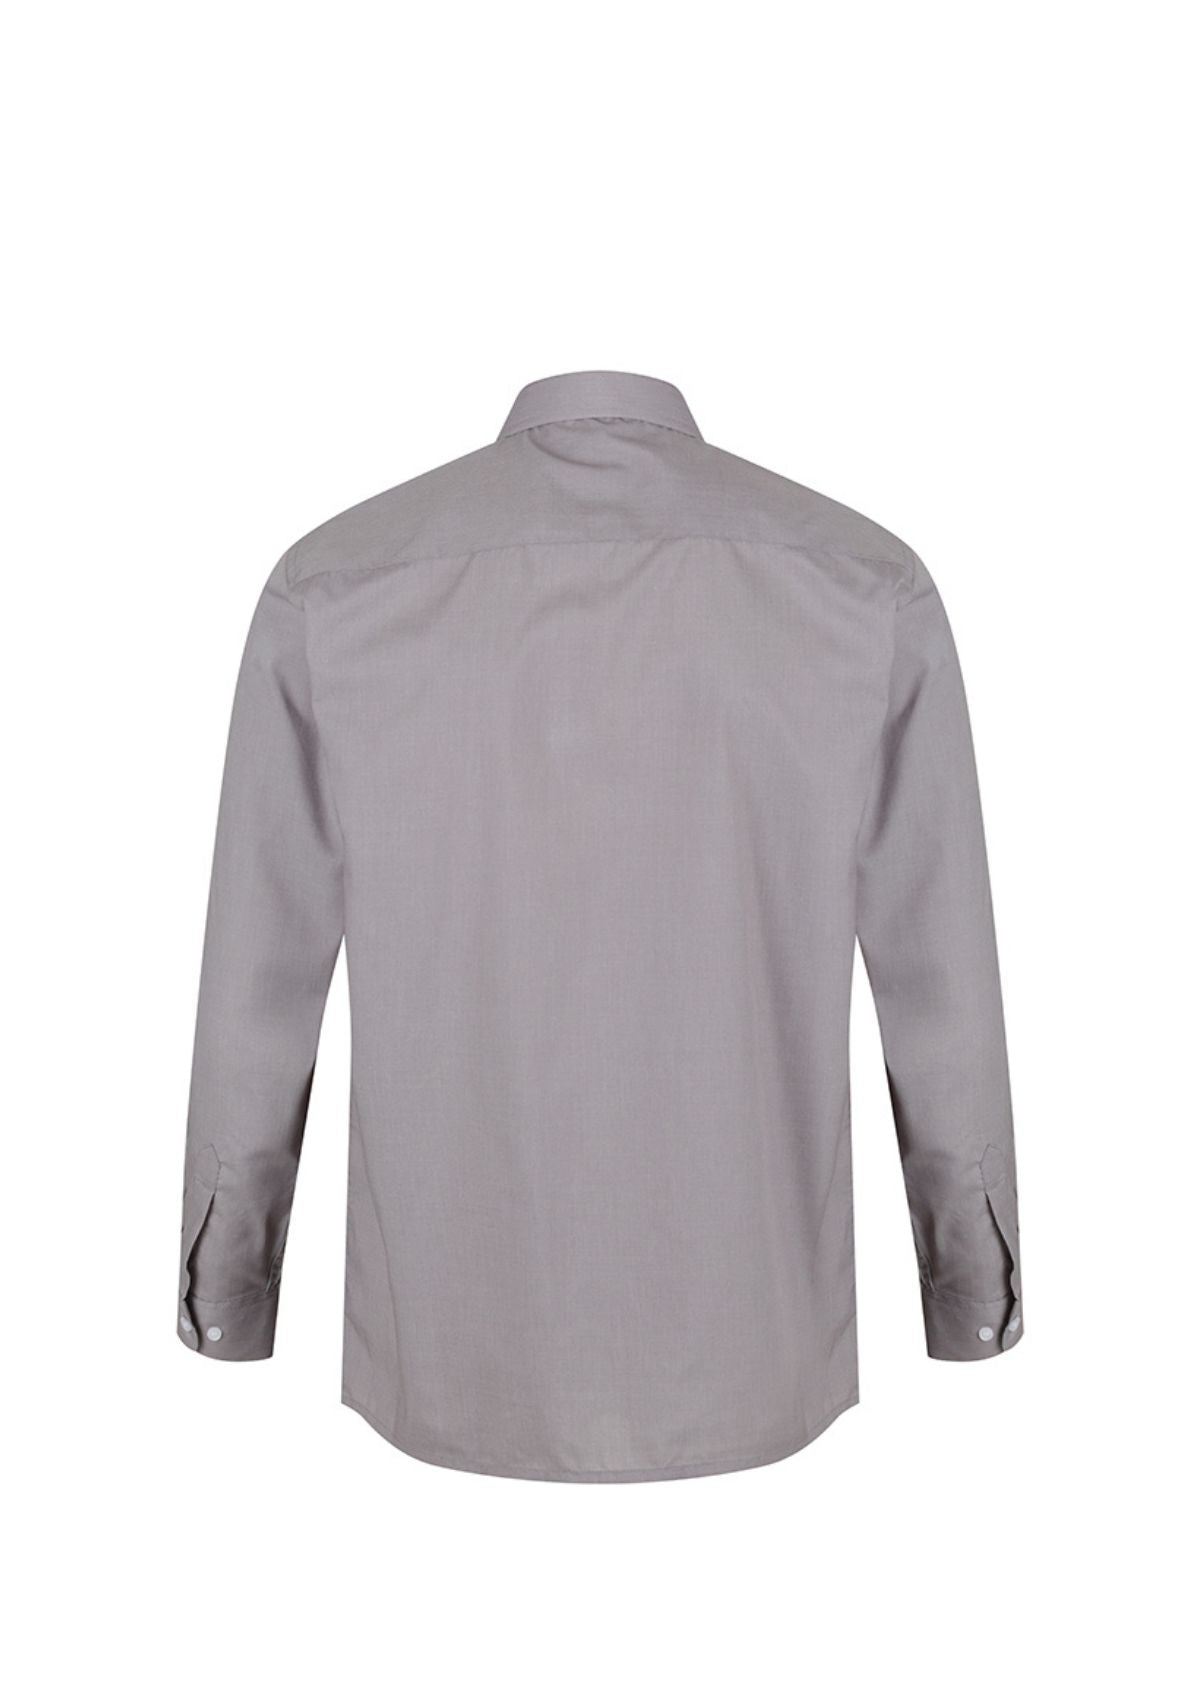 1880 Club Grey Shirt back